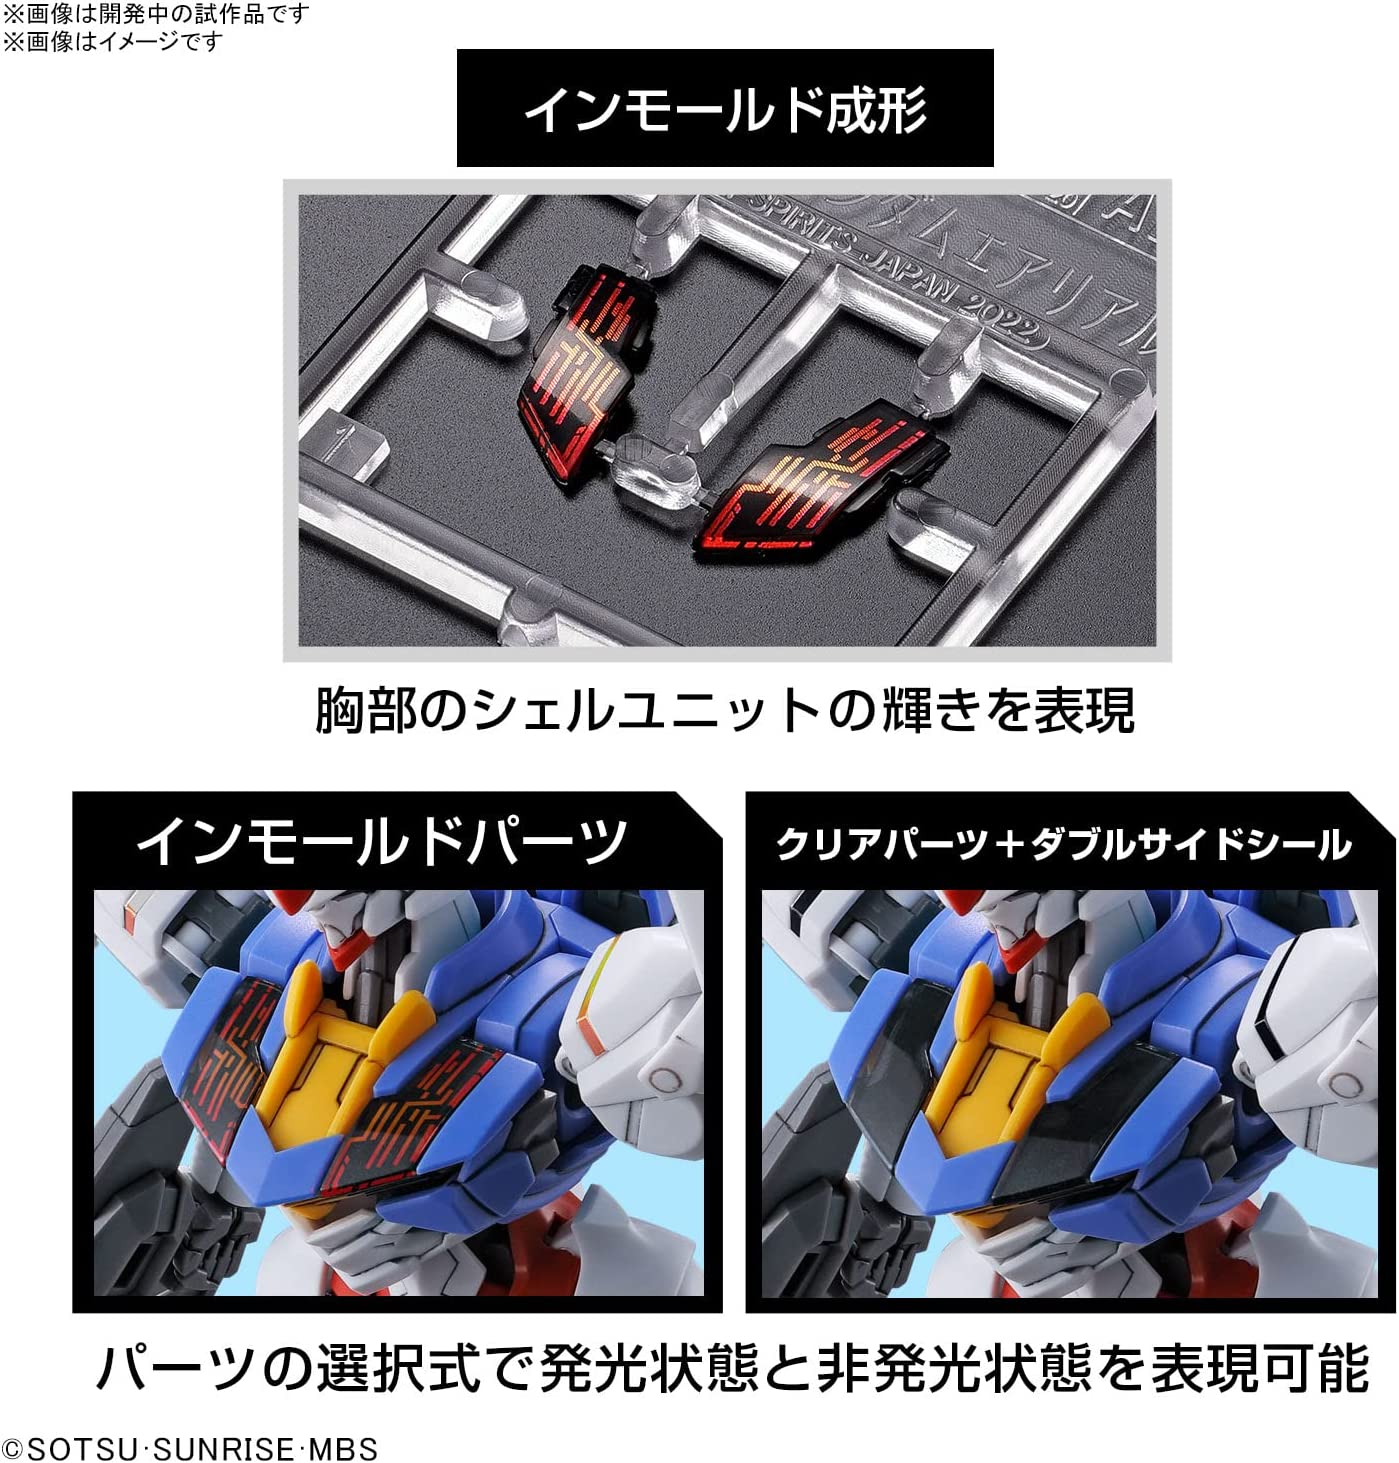 HG Mobile Suit Gundam Mercury Witch Gundam Aerial 1/144 Scale Co